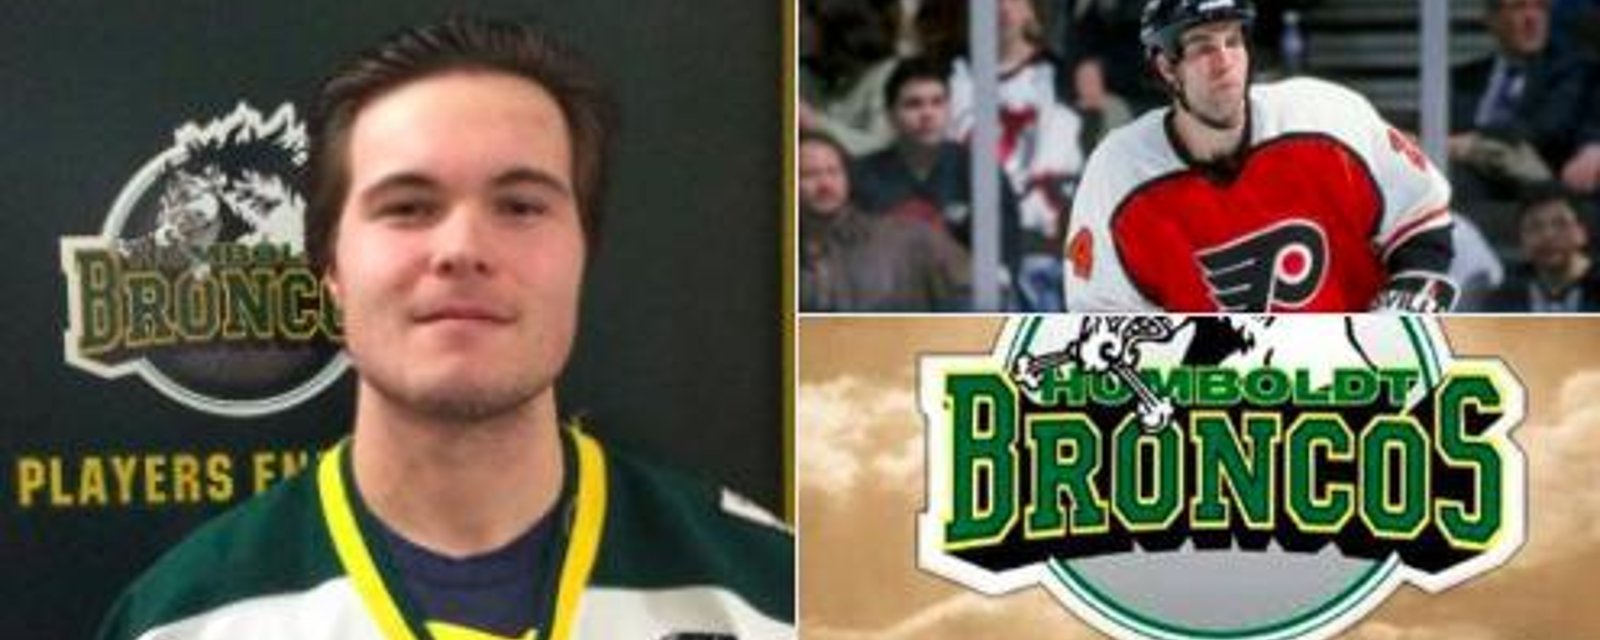 Le fils d'un joueur de la LNH parmi les victimes du terrible accident d'autobus des Broncos de Humboldt